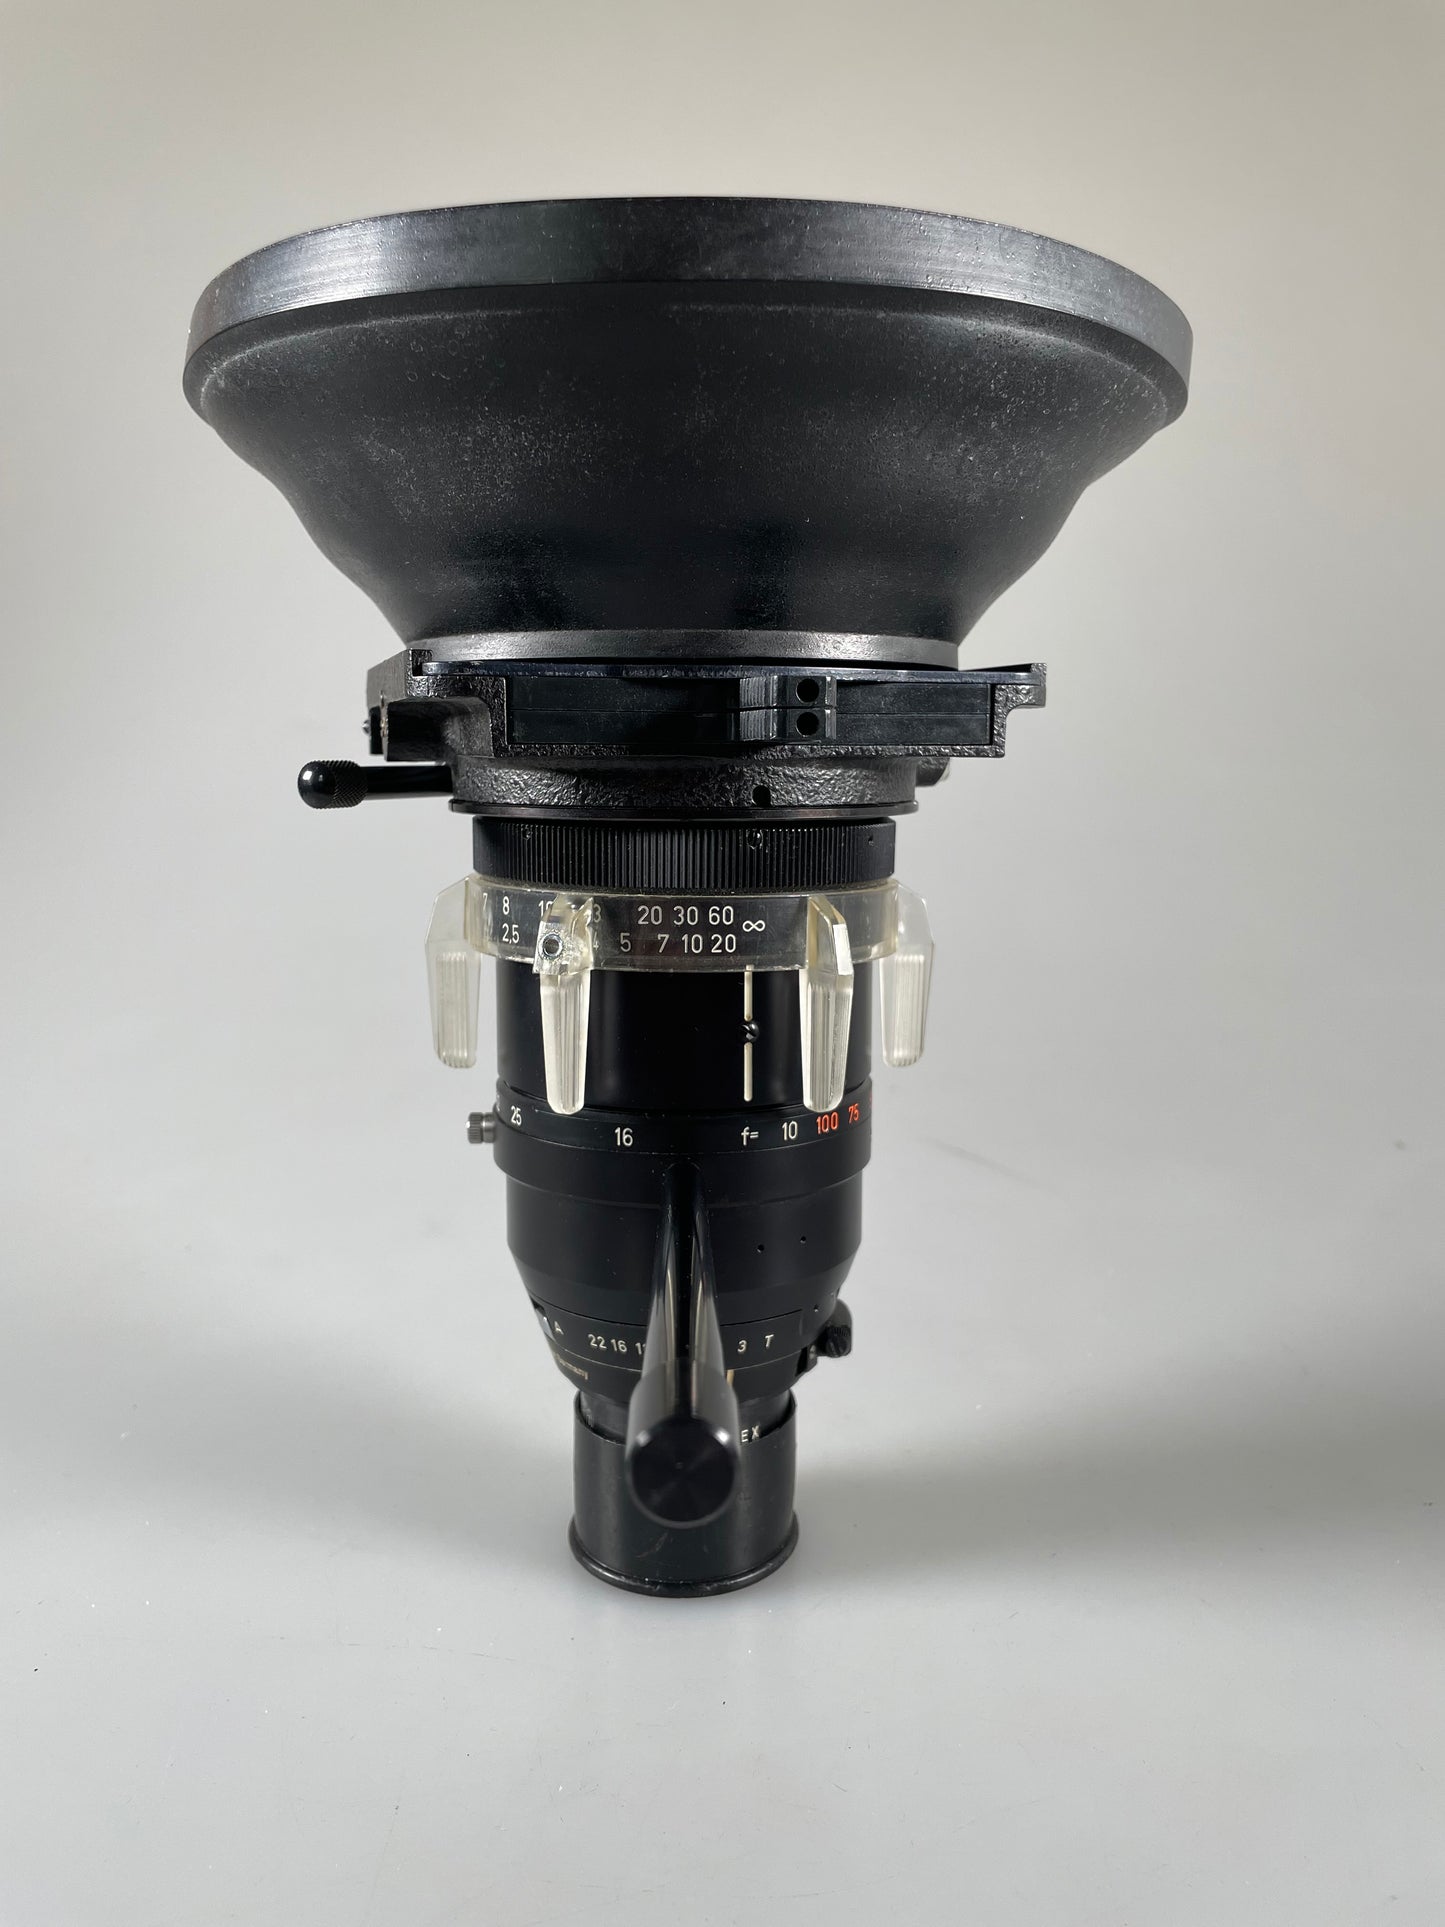 Carl Zeiss, 10-100mm F2.8 Vario Sonnar Arriflex mount lens